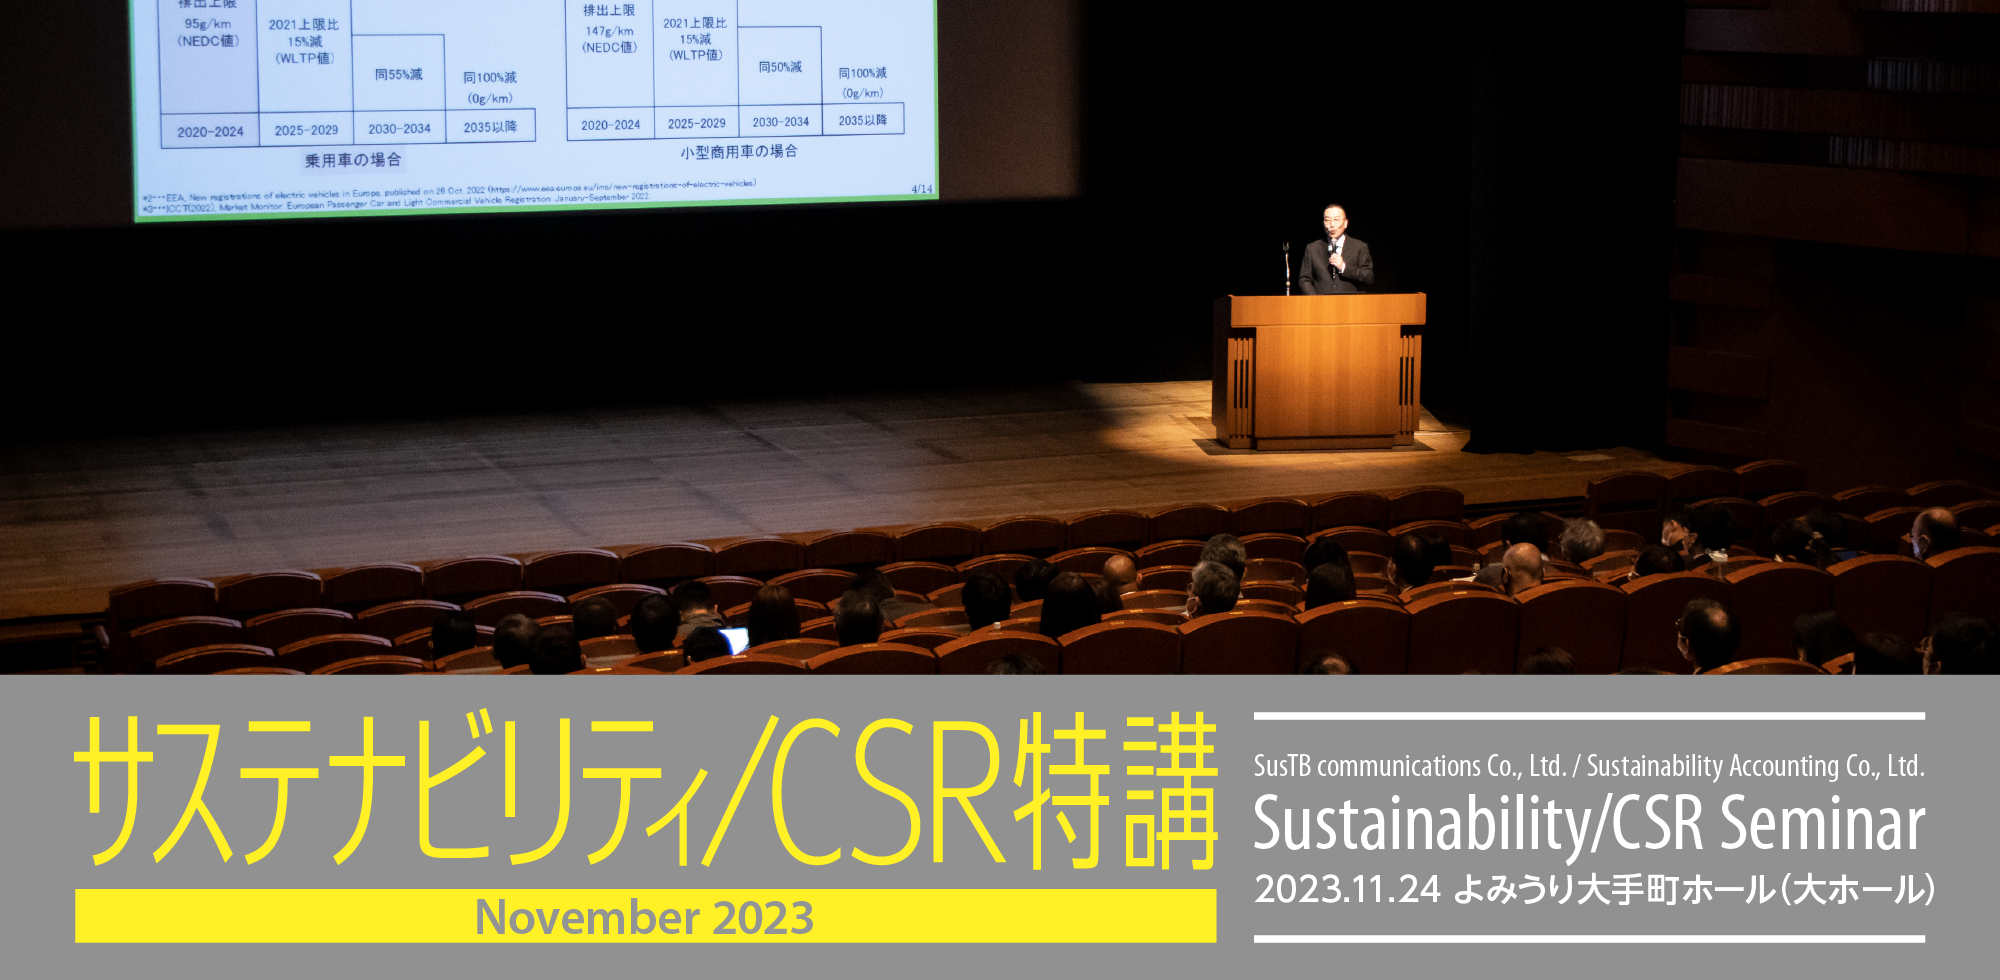 サステナビリティ/CSR特講 2022.12.9 よみうり大手町ホール（大ホール）